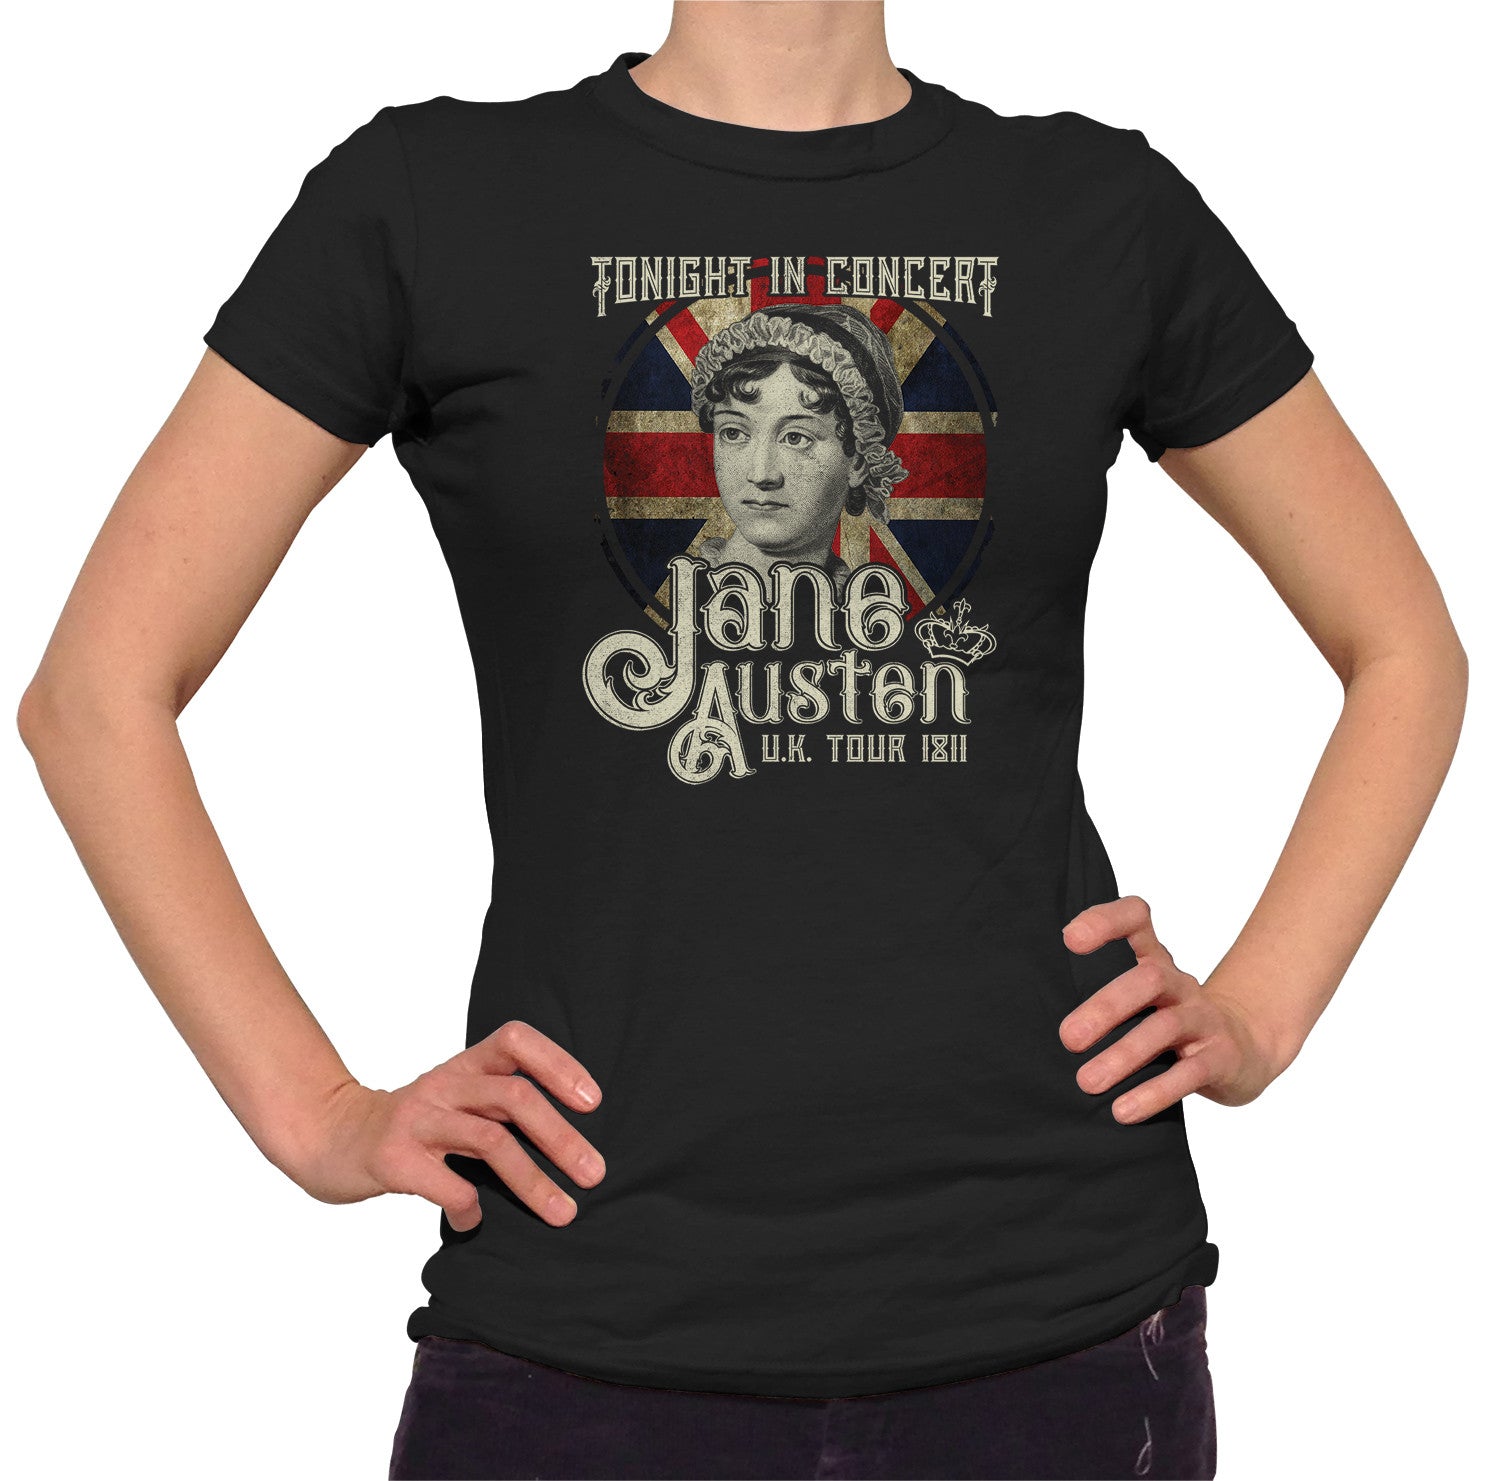 Women's Jane Austen Rock and Roll UK Tour T-Shirt